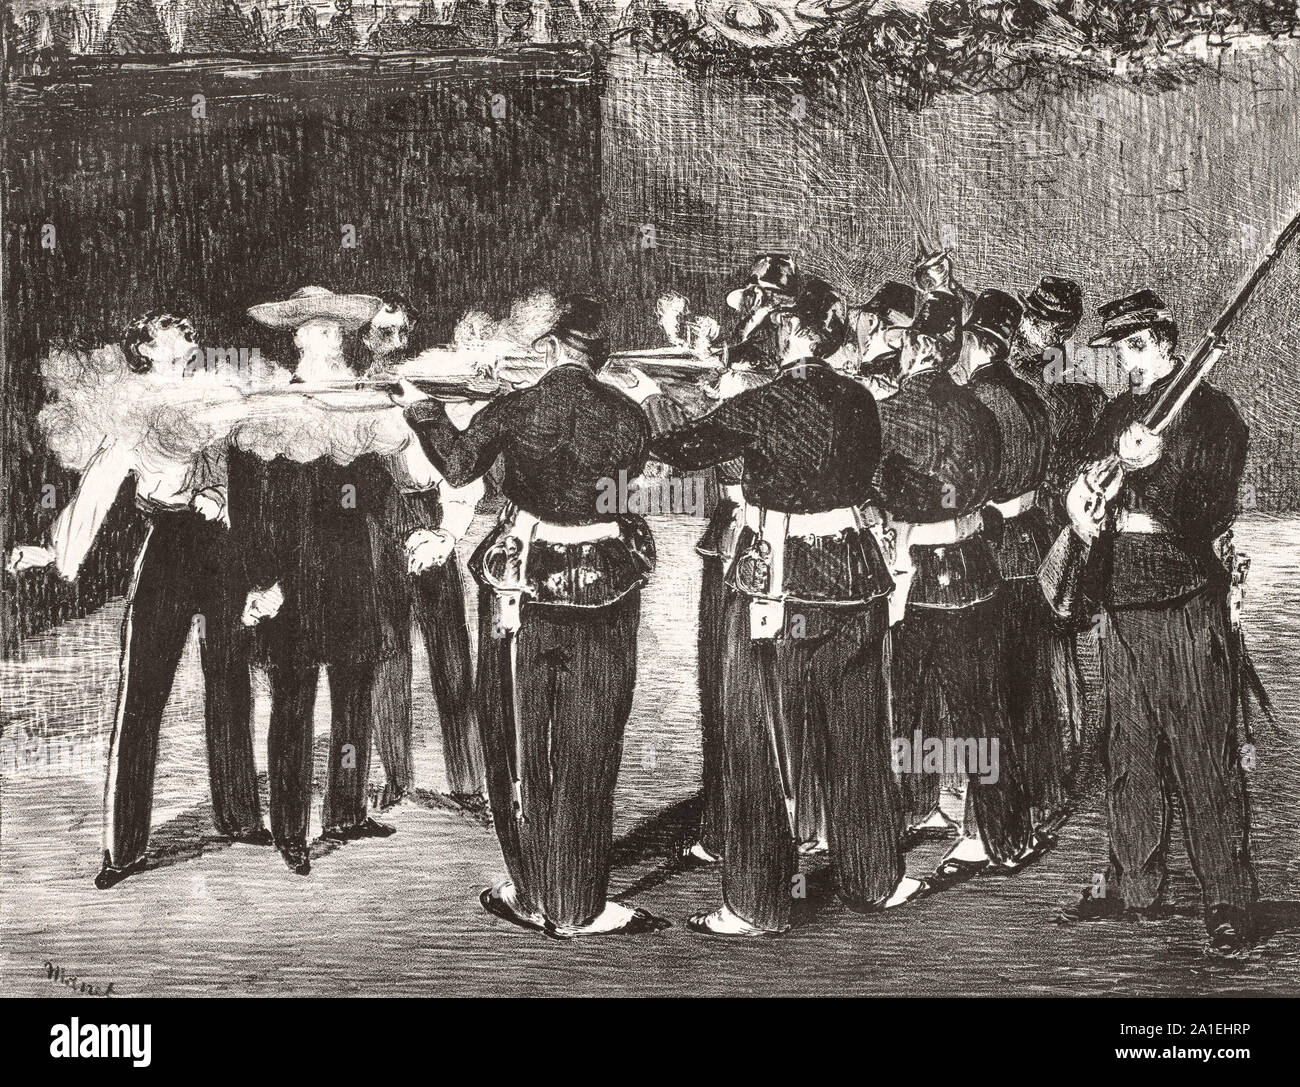 Die Ausführung von Kaiser Maximilian. Lithographie. 1867. Maximilian I (1832 - 1867) war der einzige Monarch der Zweiten mexikanischen Kaiserreich. Er war ein jüngerer Bruder des österreichischen Kaisers Franz Joseph I. Stockfoto